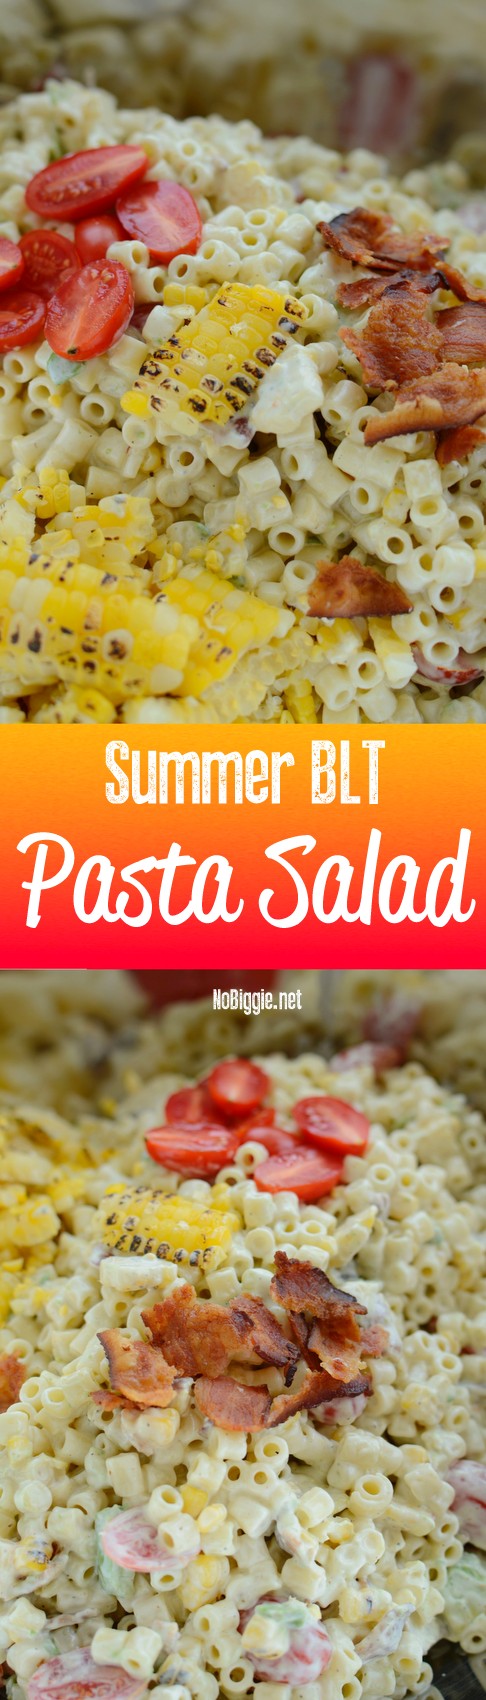 Summer BLT pasta salad video recipe | NoBiggie.net